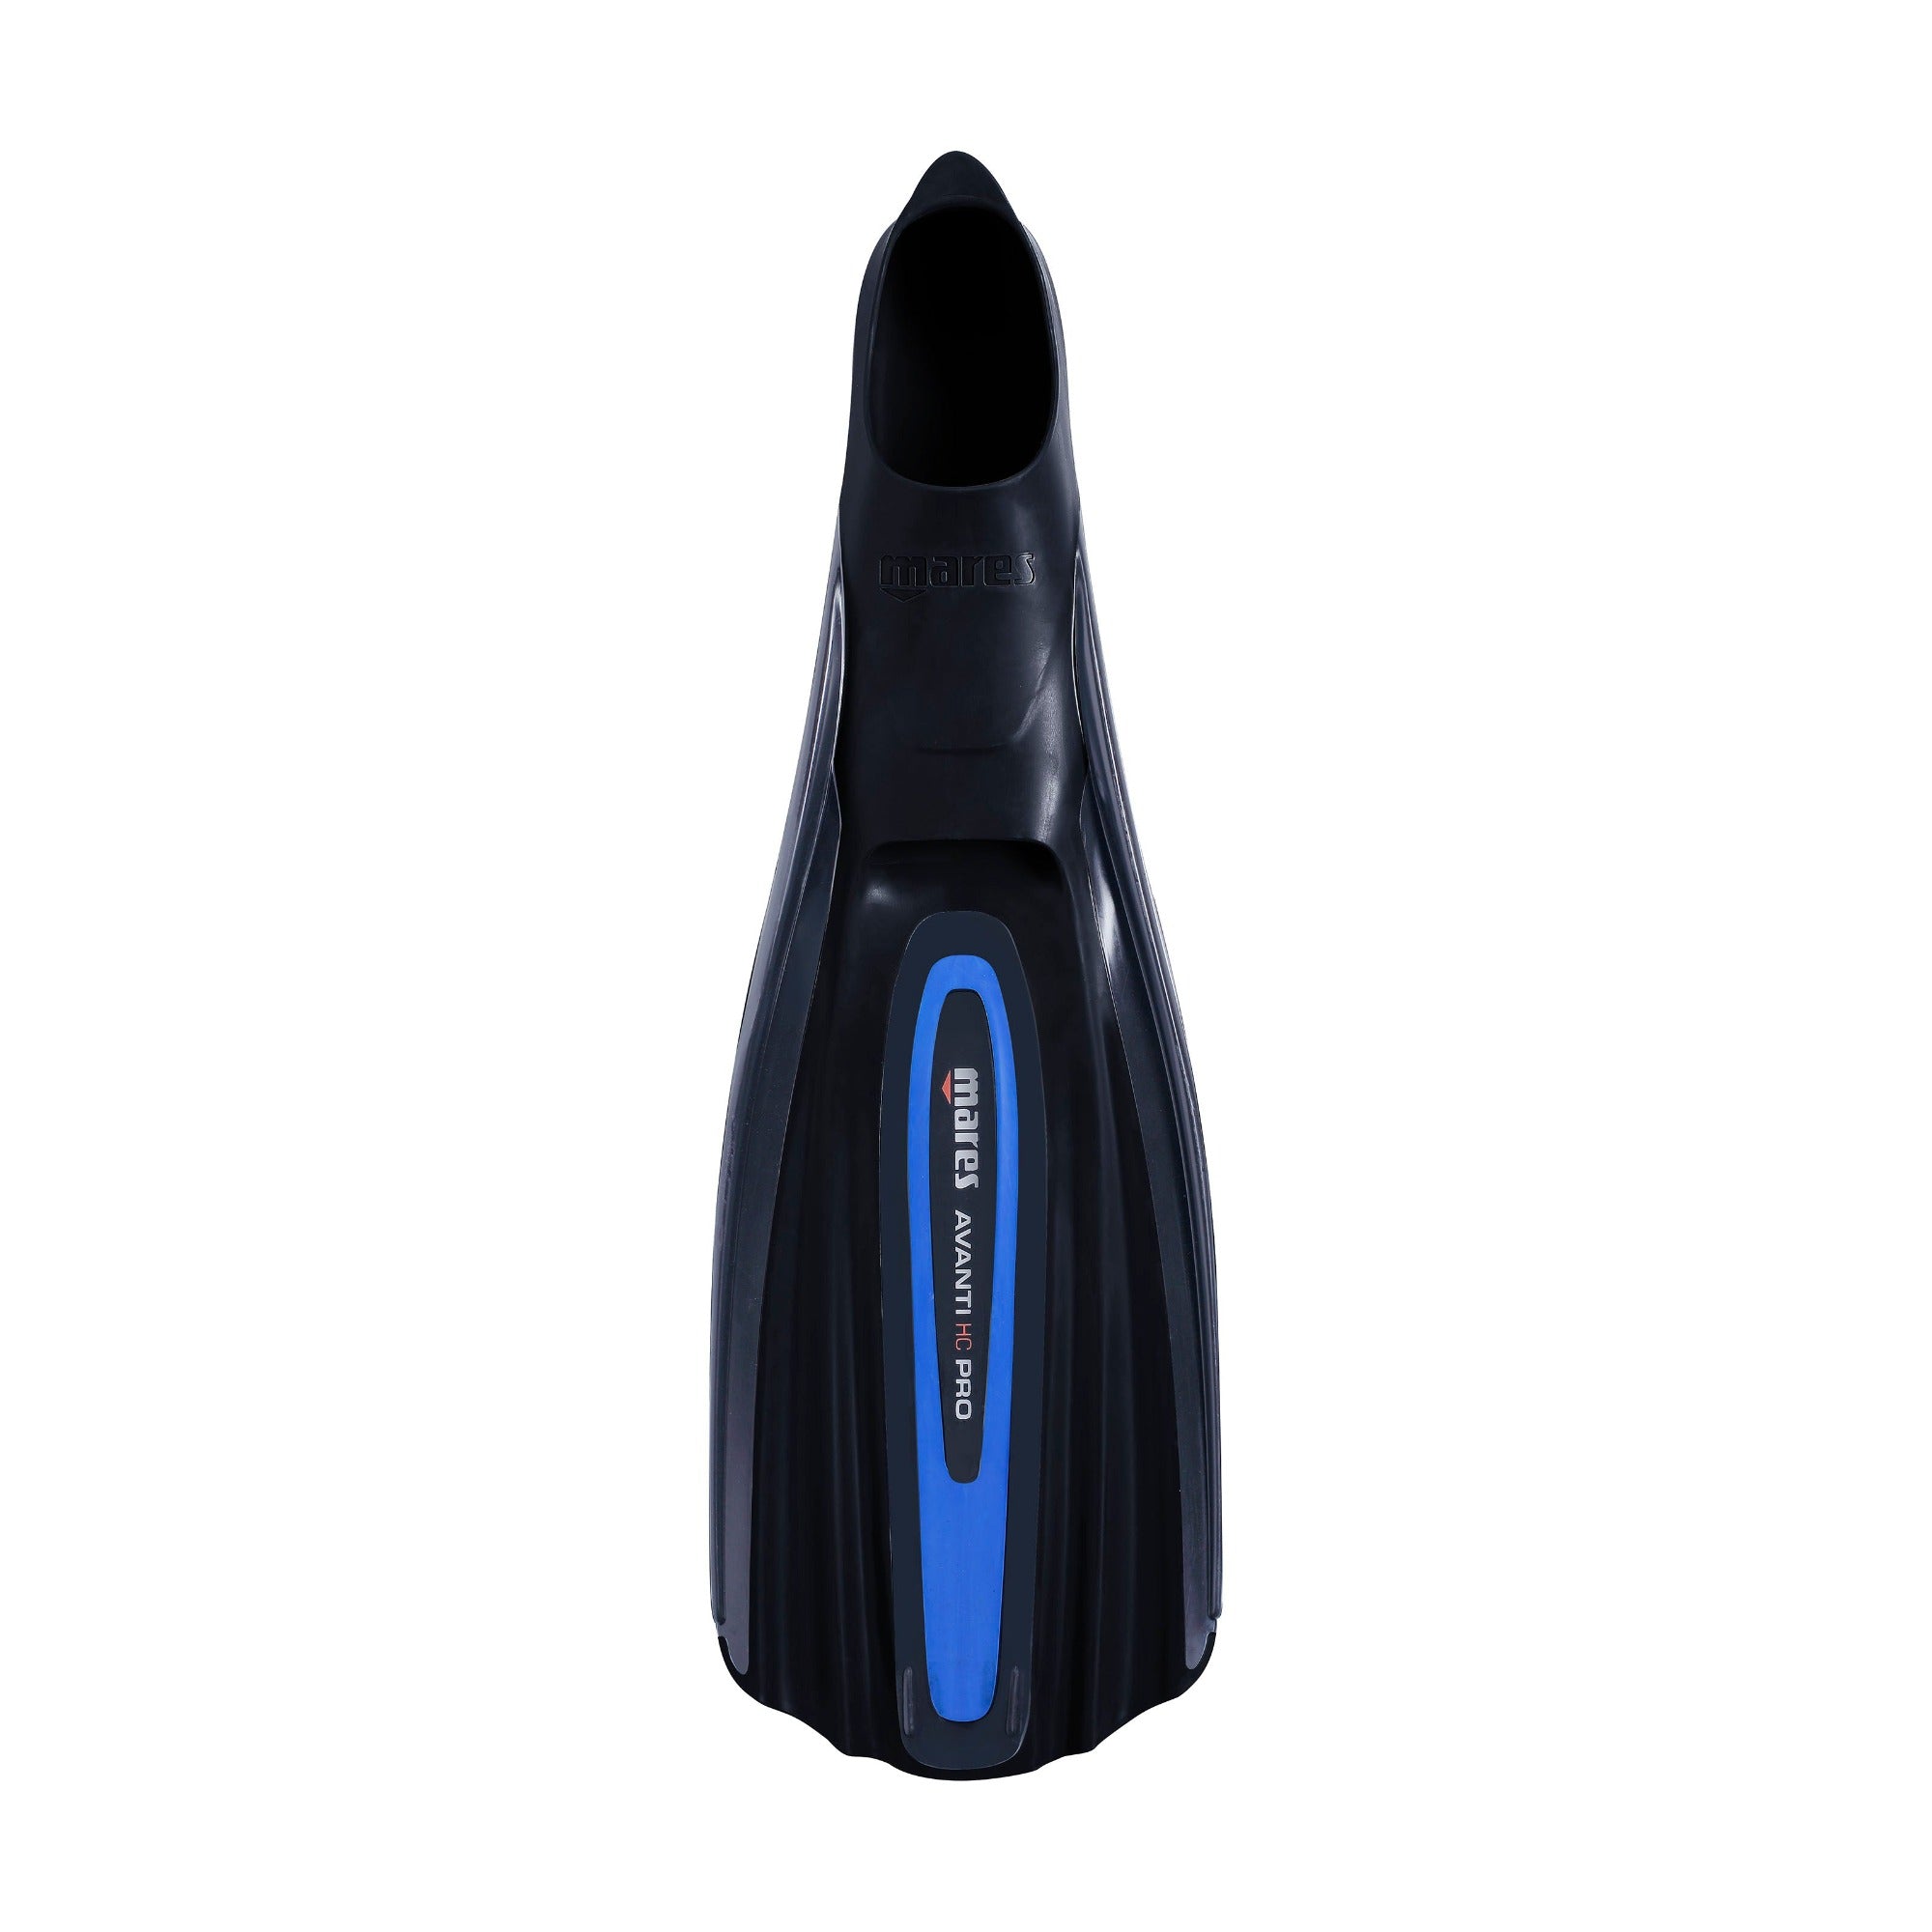 Schwimmflosse Avanti HC Pro von Mares in schwarz/blau